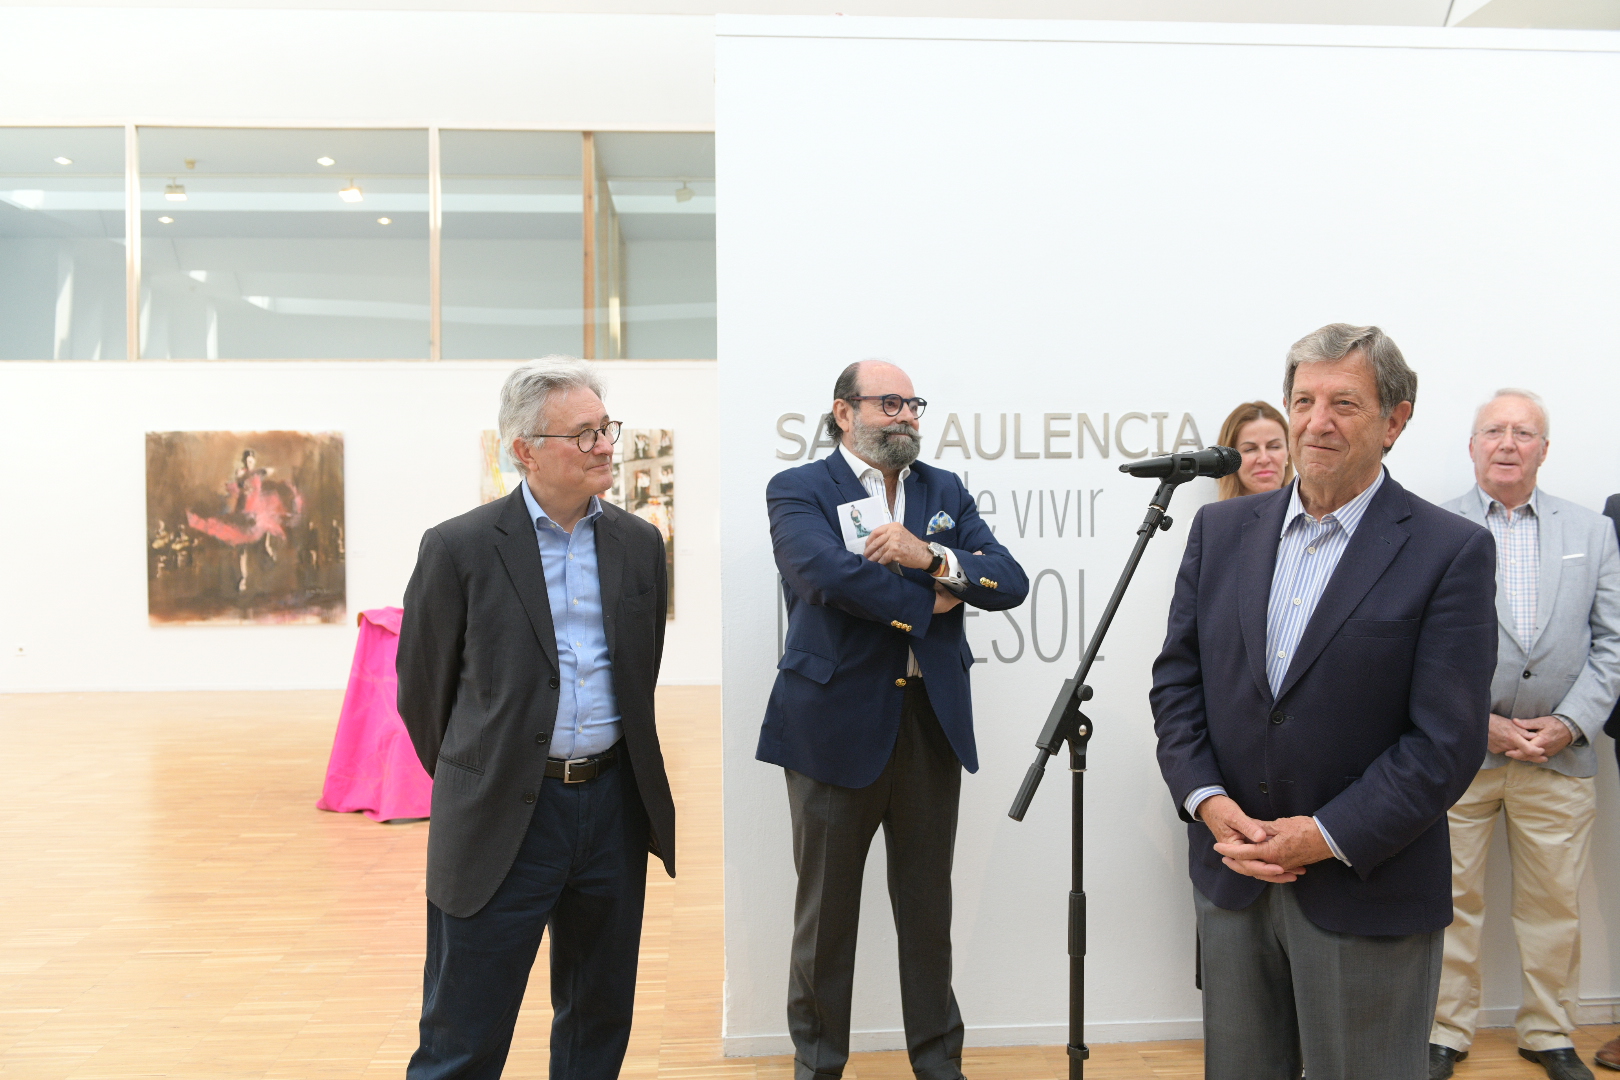 El alcalde, Luis Partida, concejales y el artista, Javier Montesol, en la inauguración de la exposición.